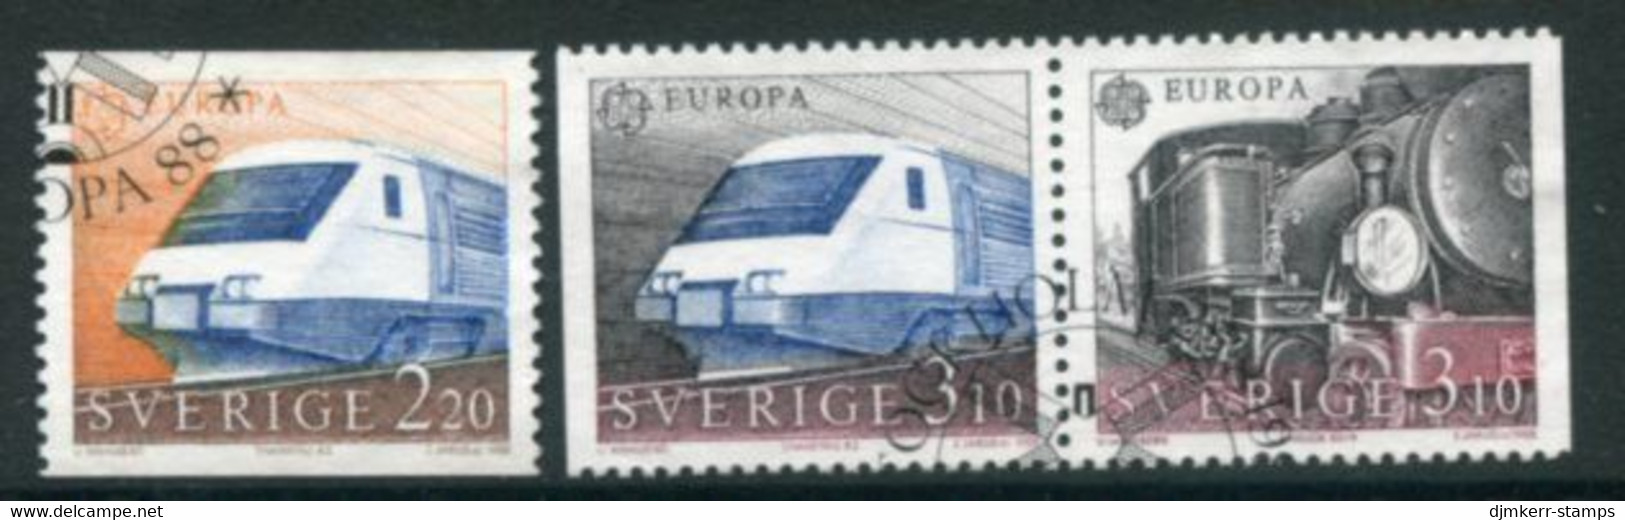 SWEDEN 1988 Europa: Transport. Used.  Michel 1501-03 - Gebruikt